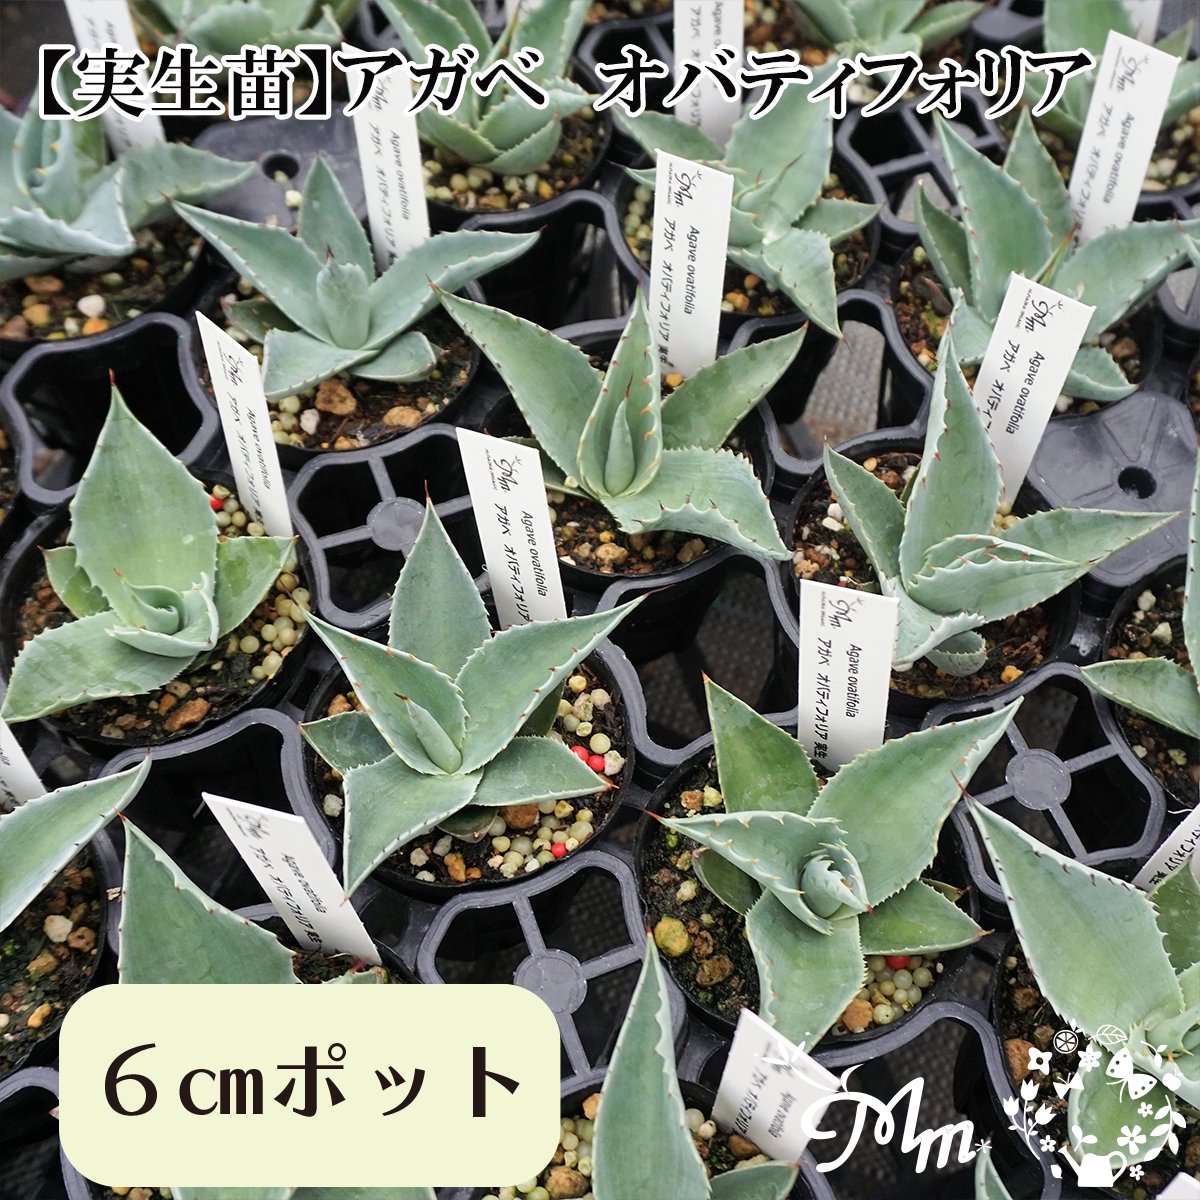 実生苗(実生株)】Agave obatifolia(アガベ オバティフォリア)6㎝ポット苗